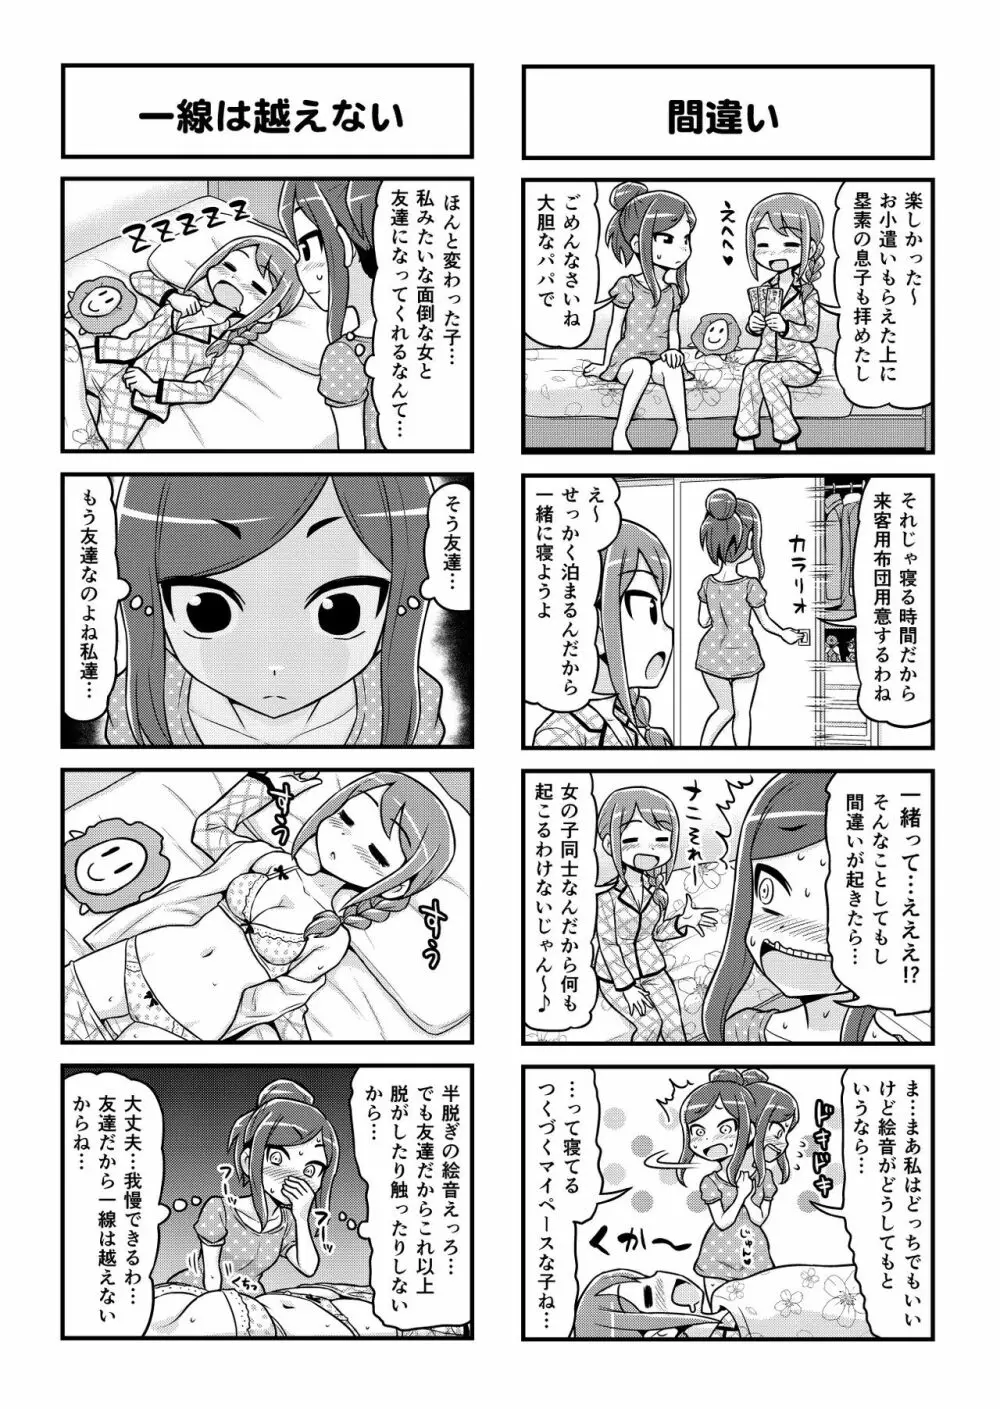 のんきBOY 1-48 - page402